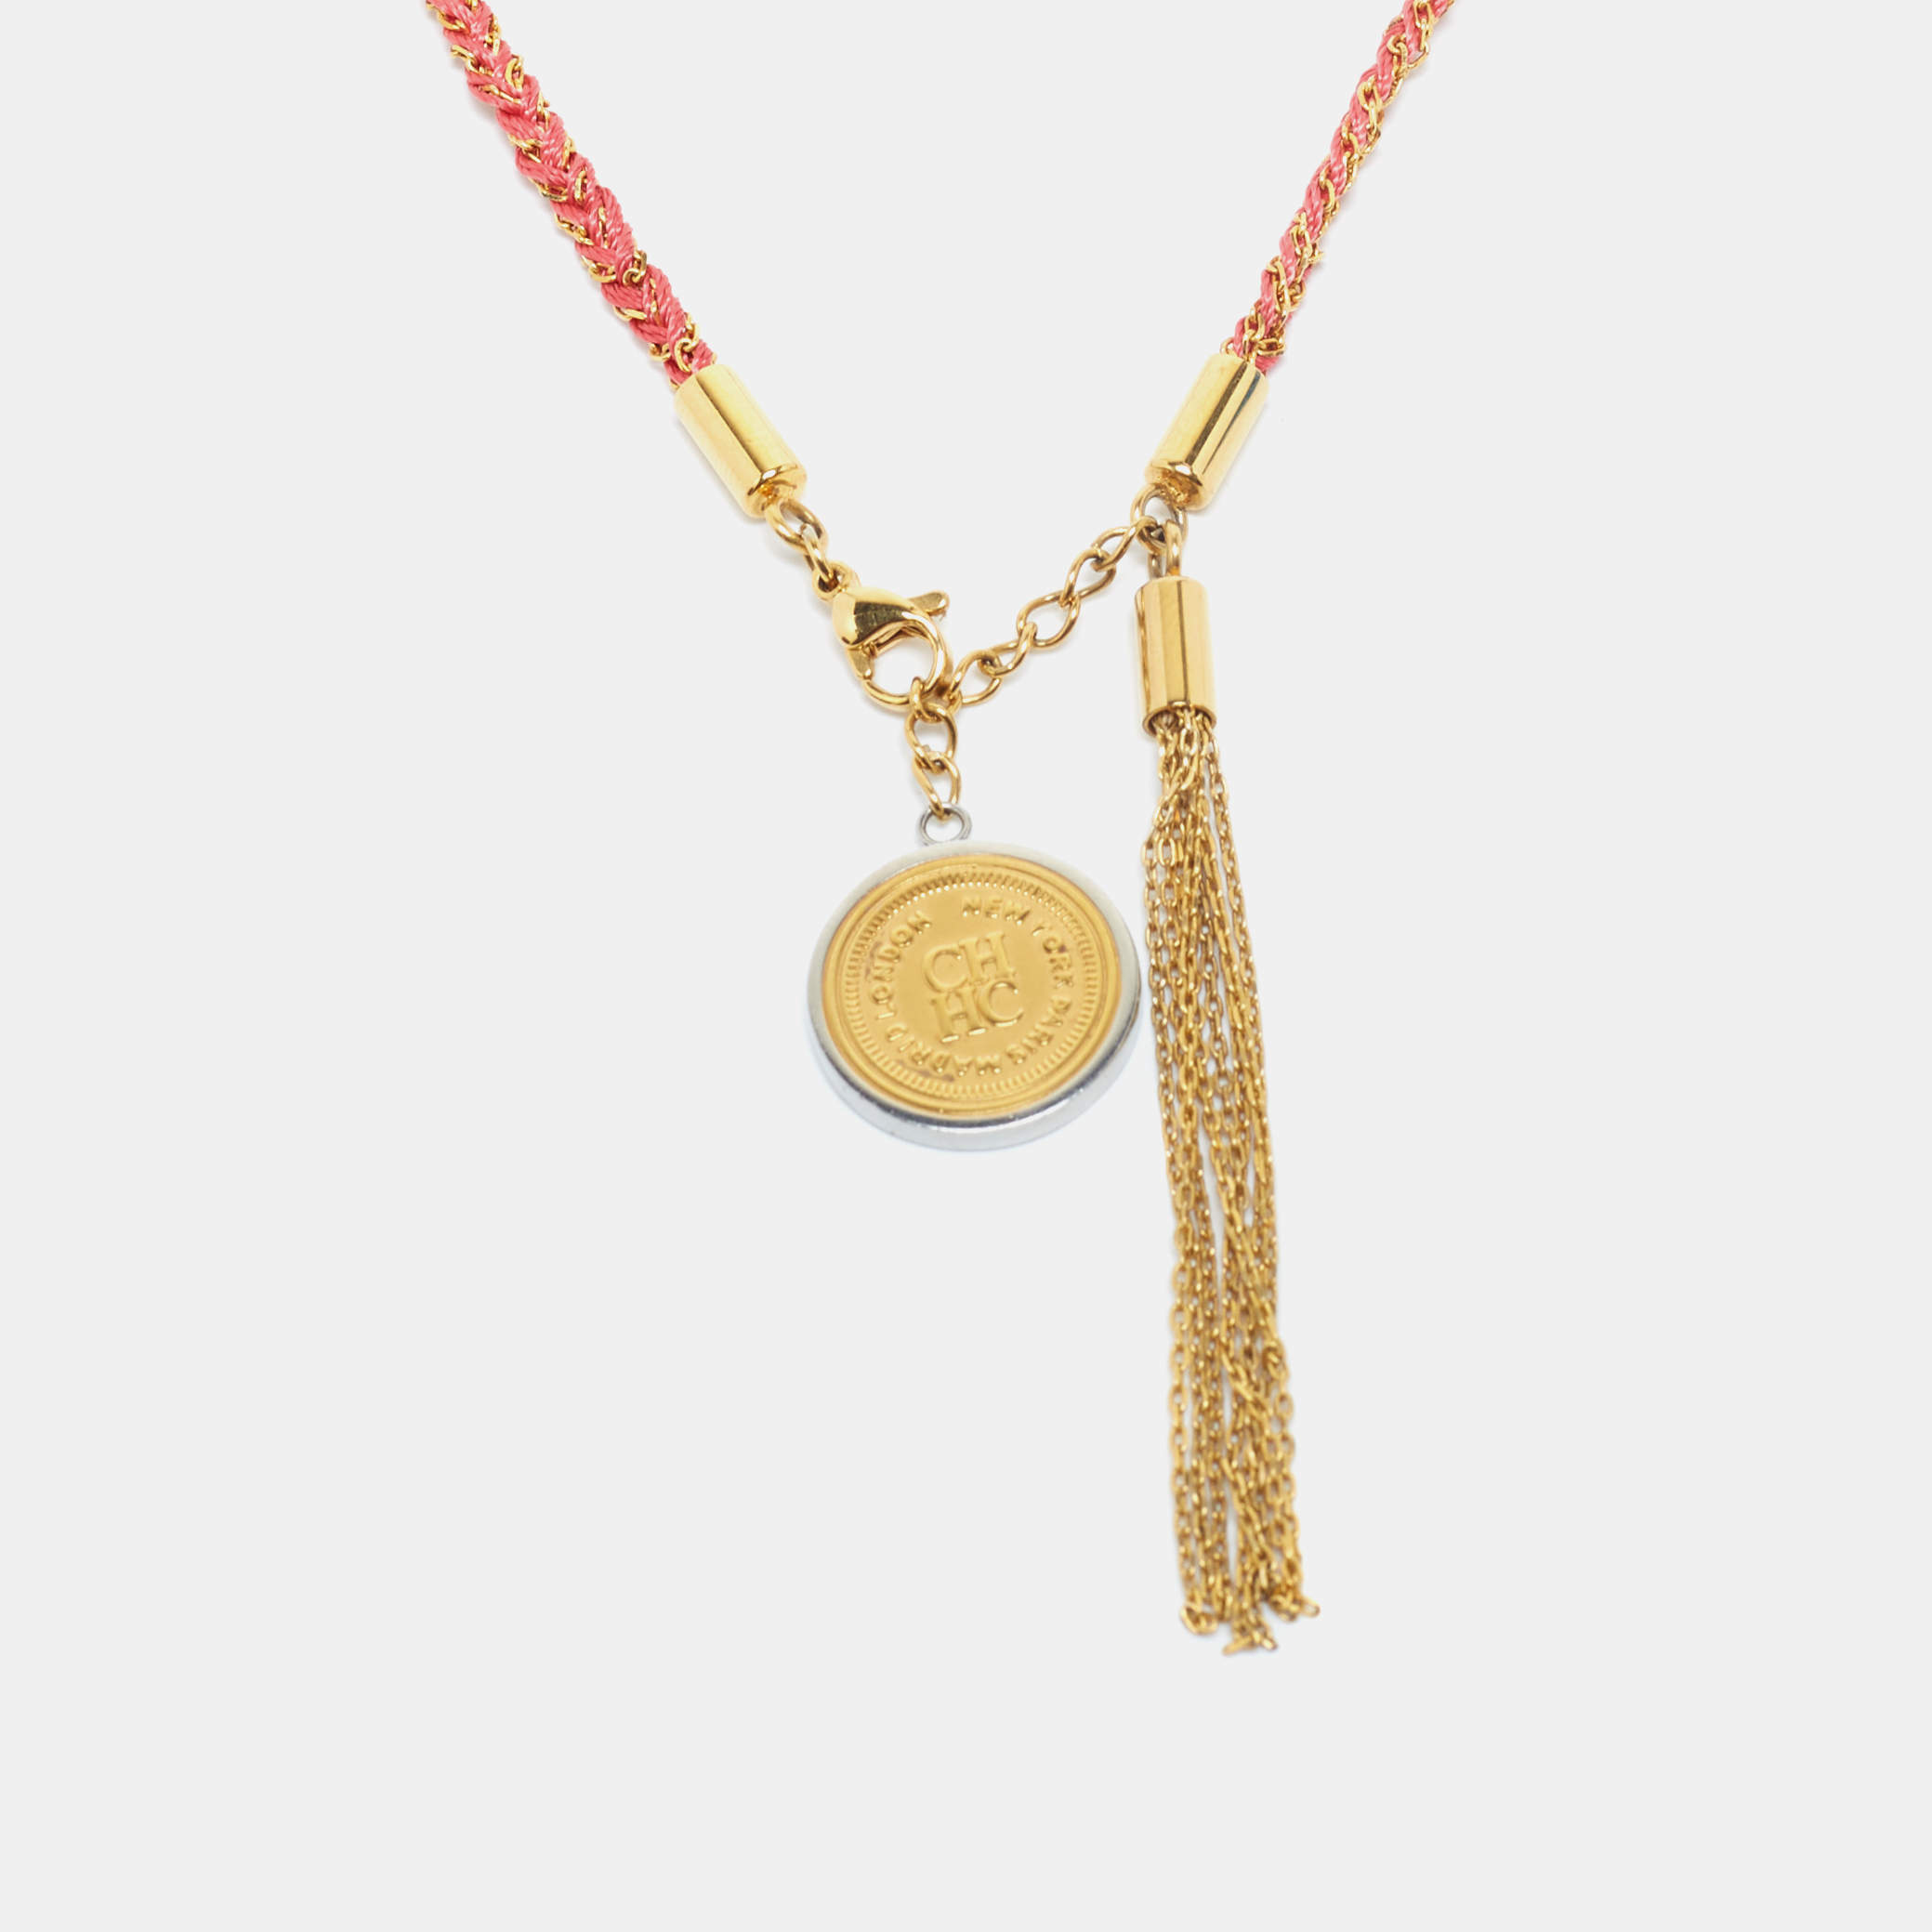  قلادة كارولينا هيريرا دلاية ميدالية مضفرة بشراشيب معدن ذهبي اللون